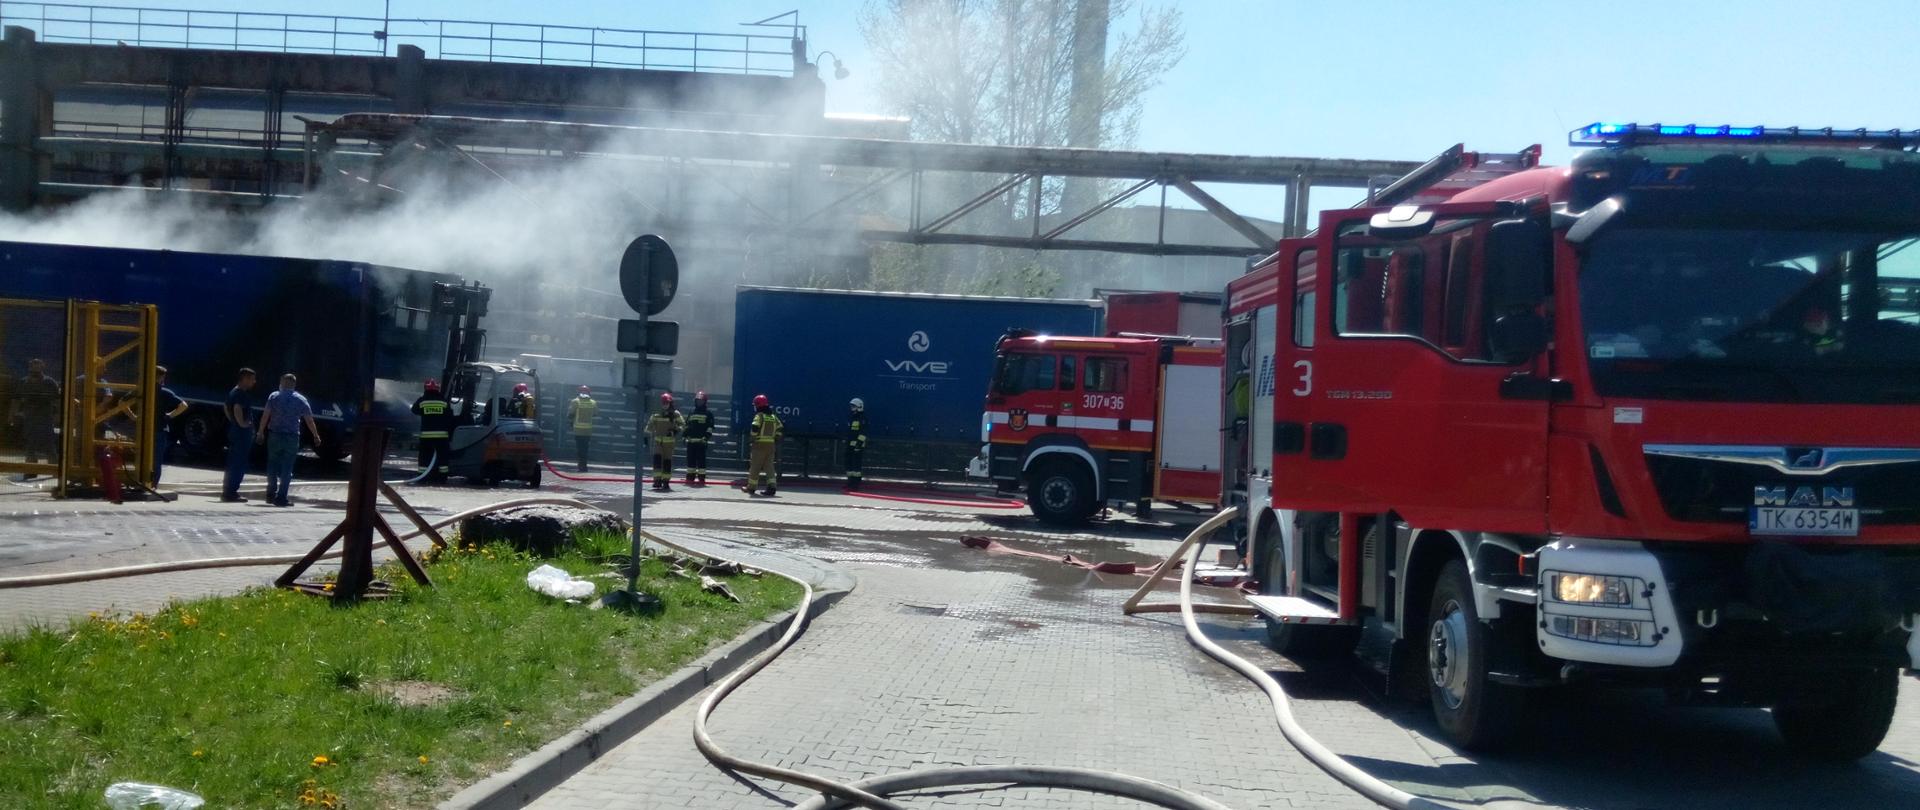 Pożar na terenie hali VIVE Tekstile Recykling przy ulicy Olszewskiego w Kielcach